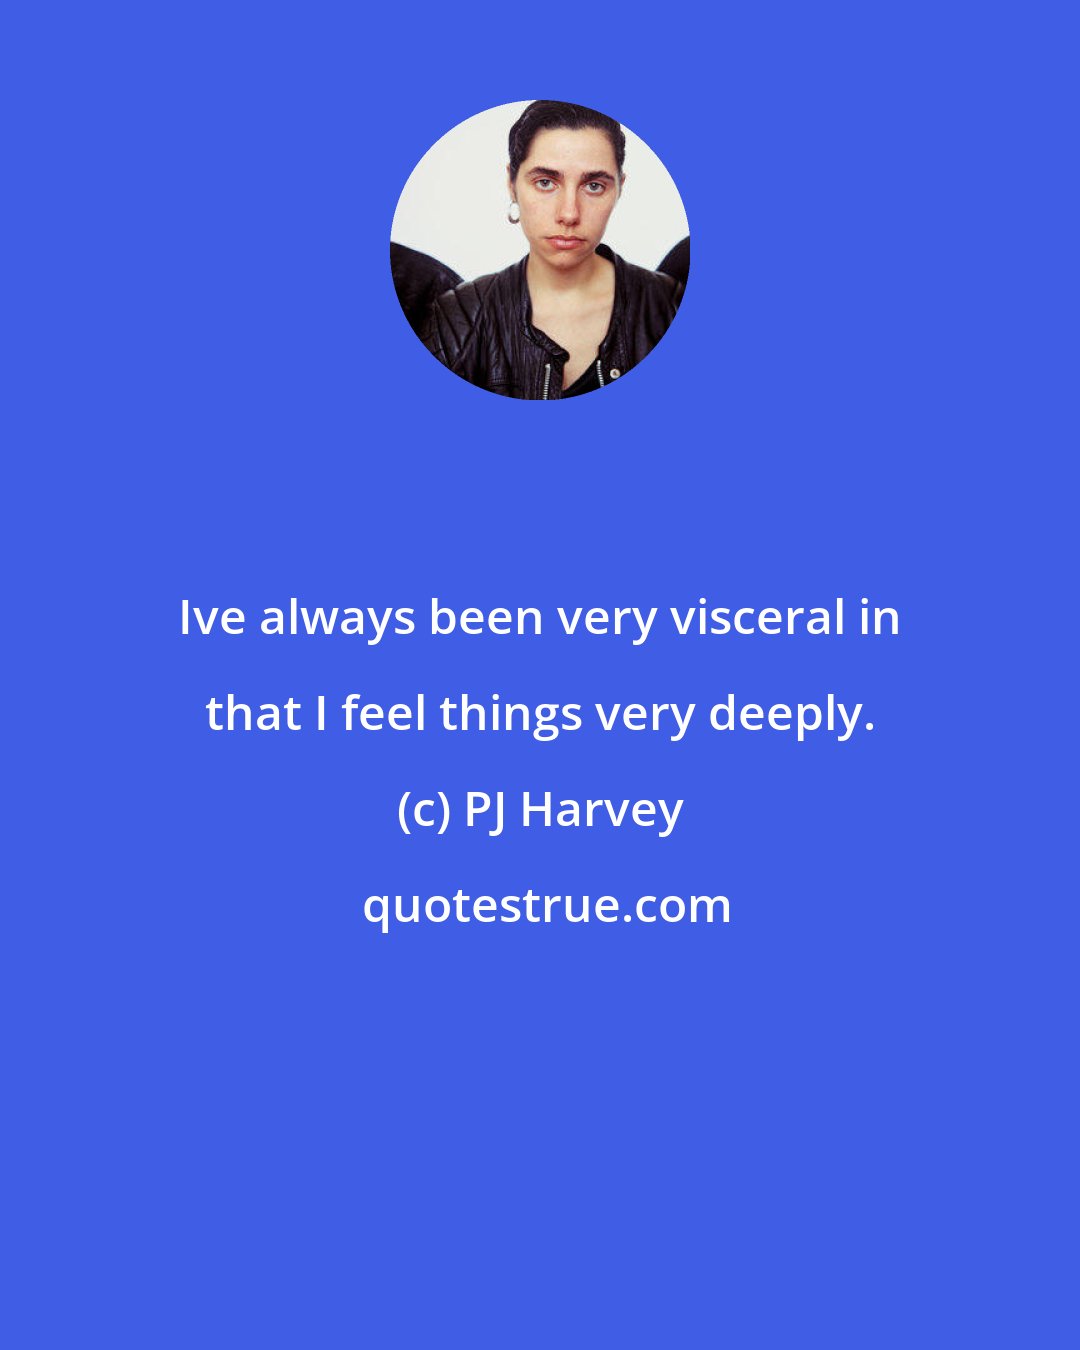 PJ Harvey: Ive always been very visceral in that I feel things very deeply.